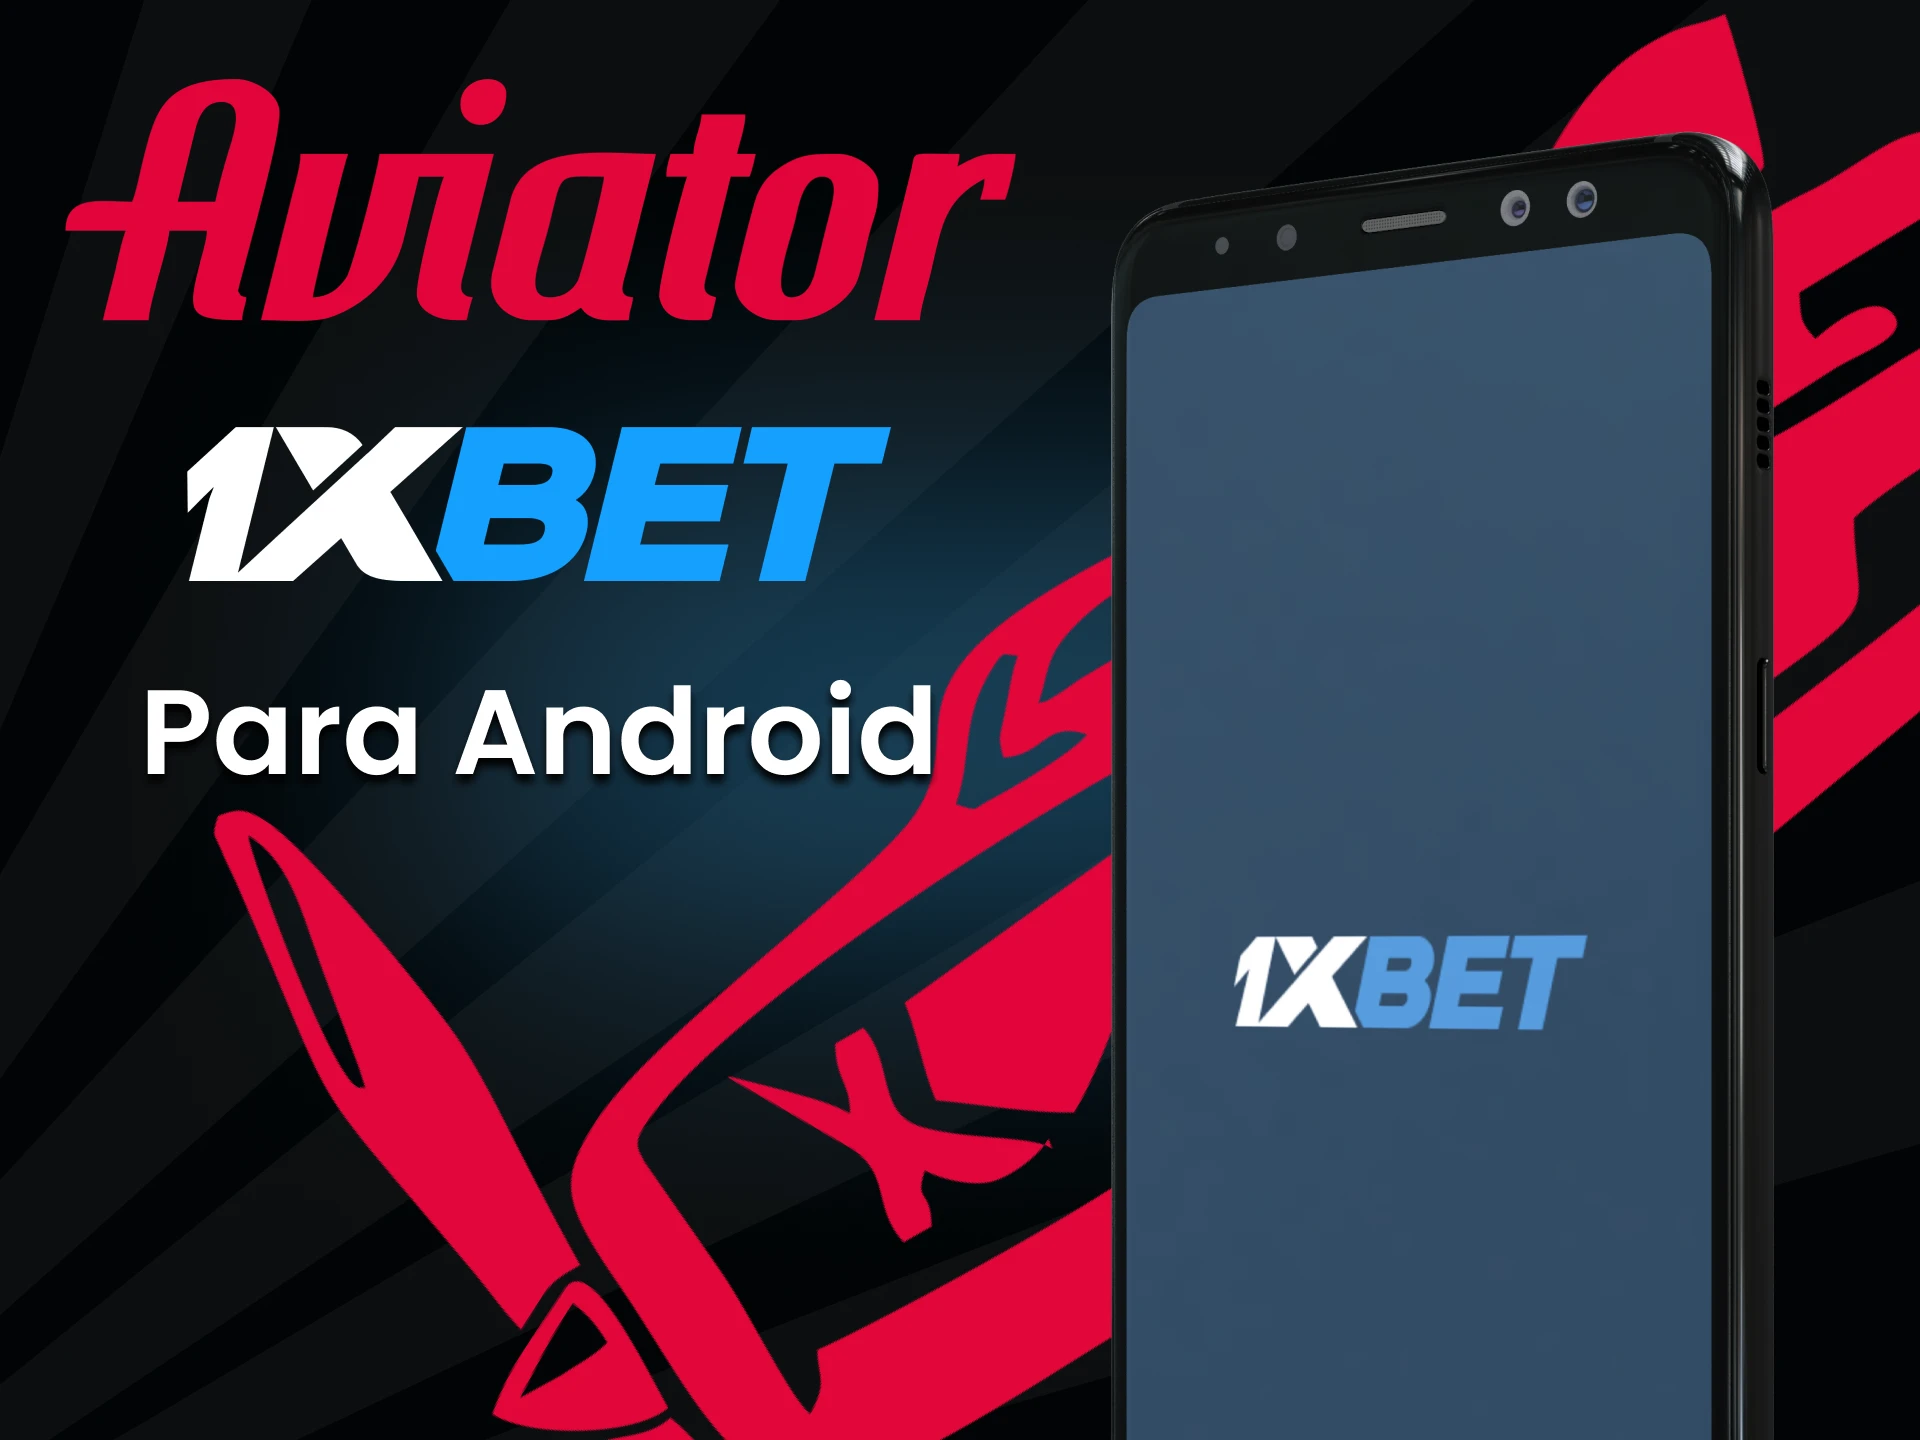 Baixe o aplicativo 1xbet para Android para jogar Aviator.